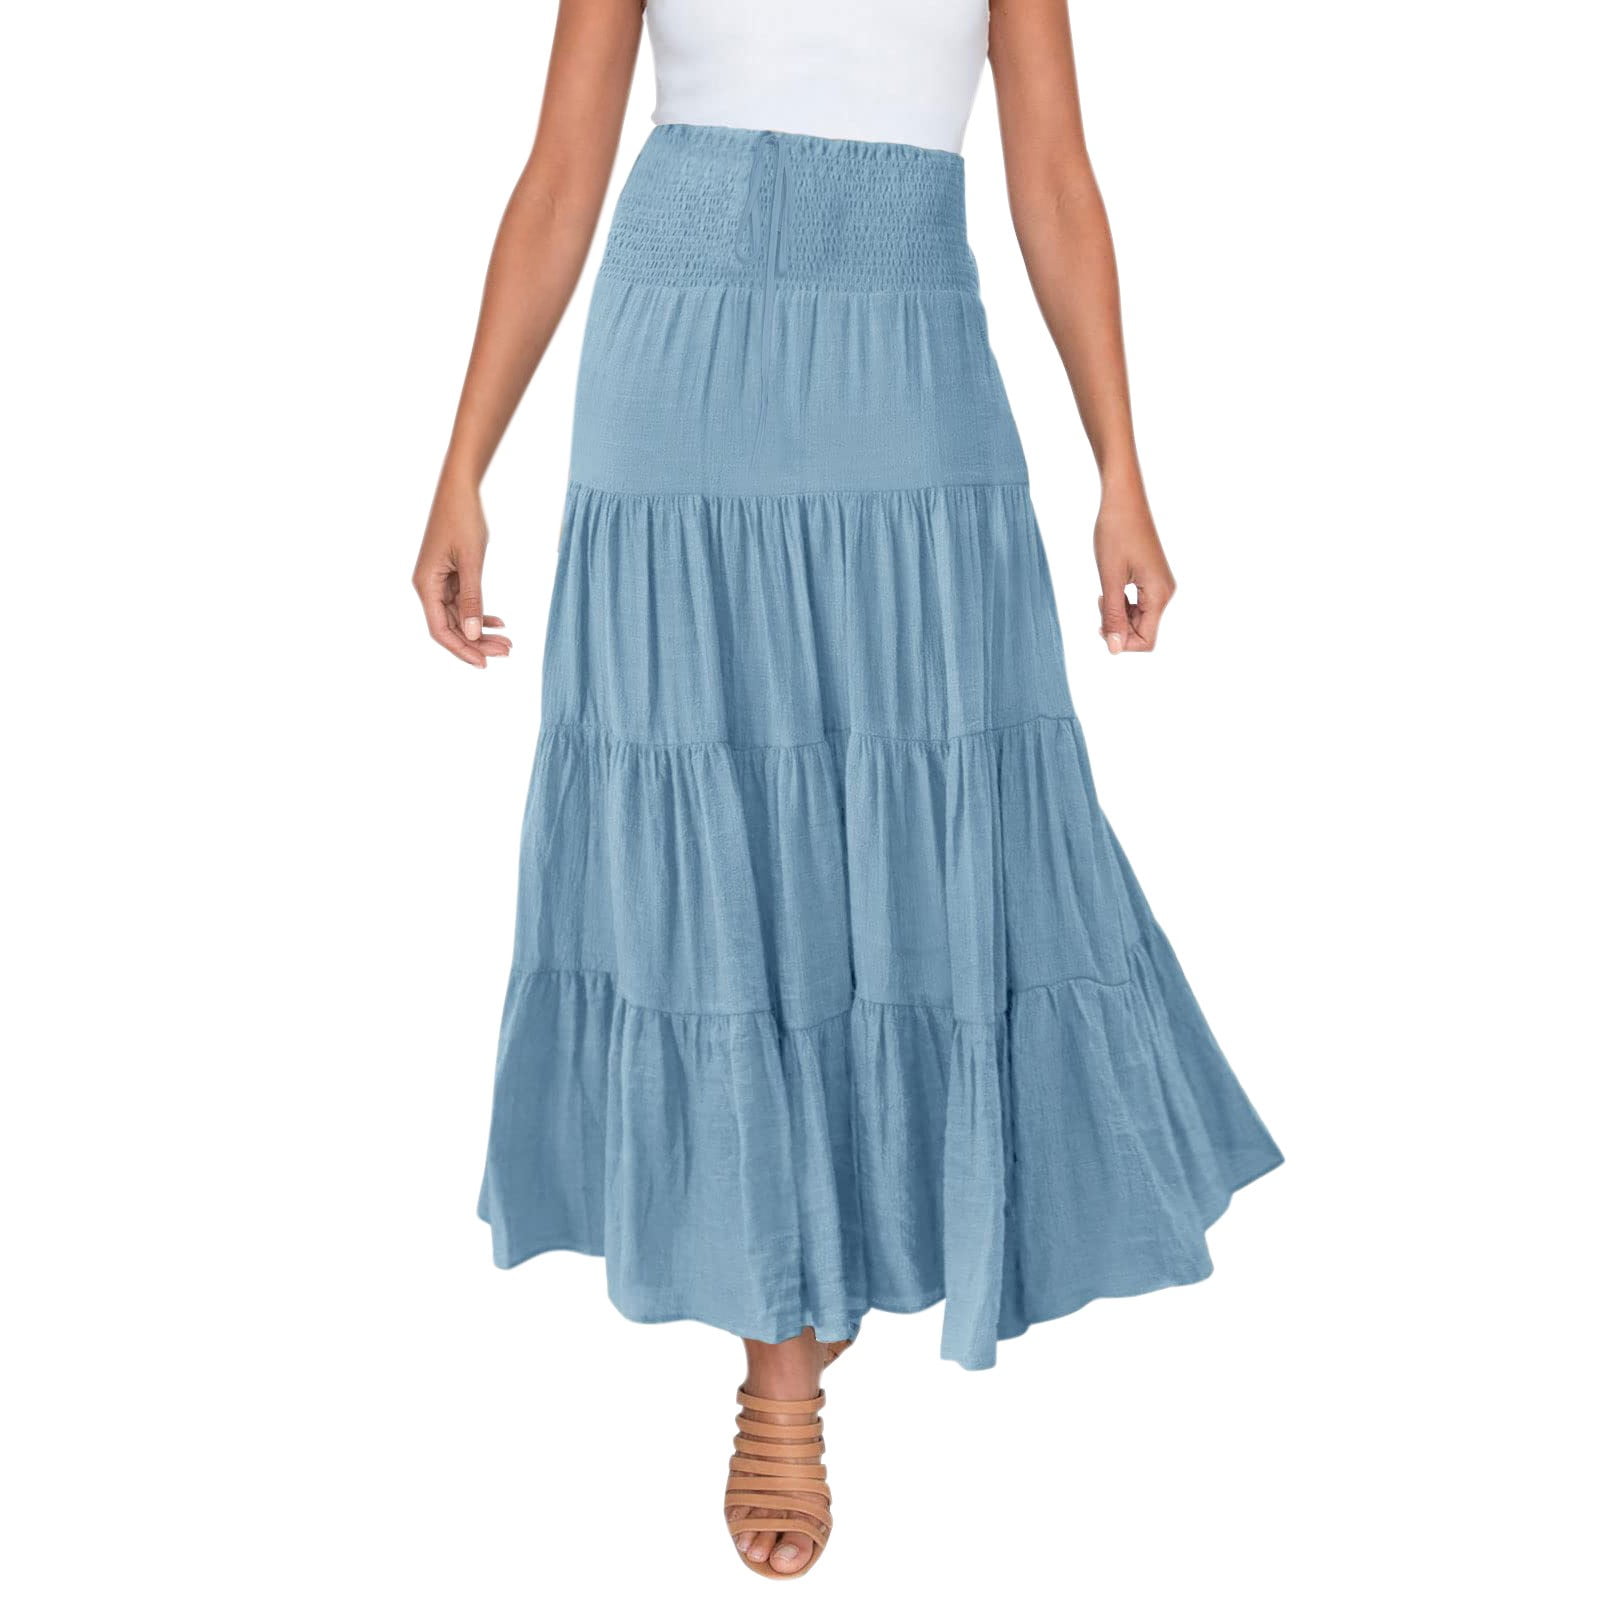 xiuh flowy skirt women's summer elastic high waist boho maxi skirt